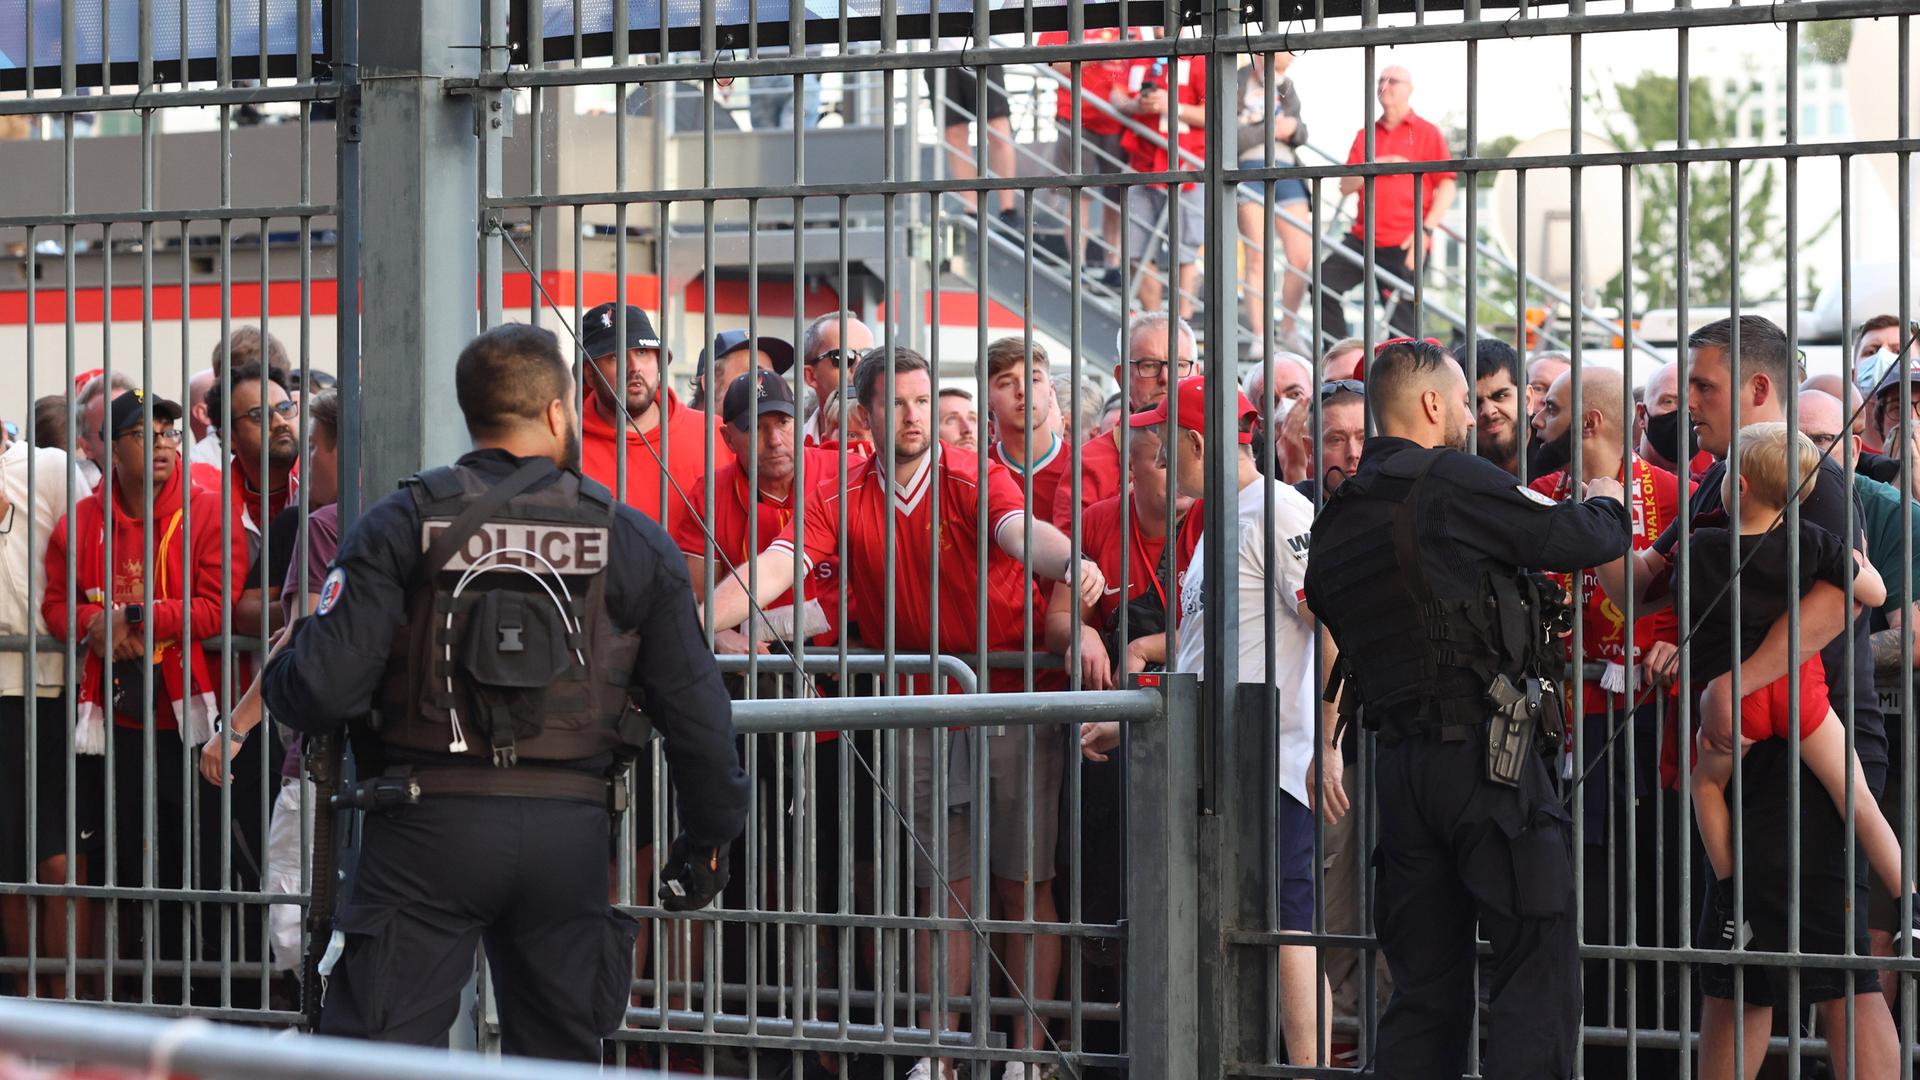 Manche Fans versuchten, über den Zaun zum Stadion zu klettern.